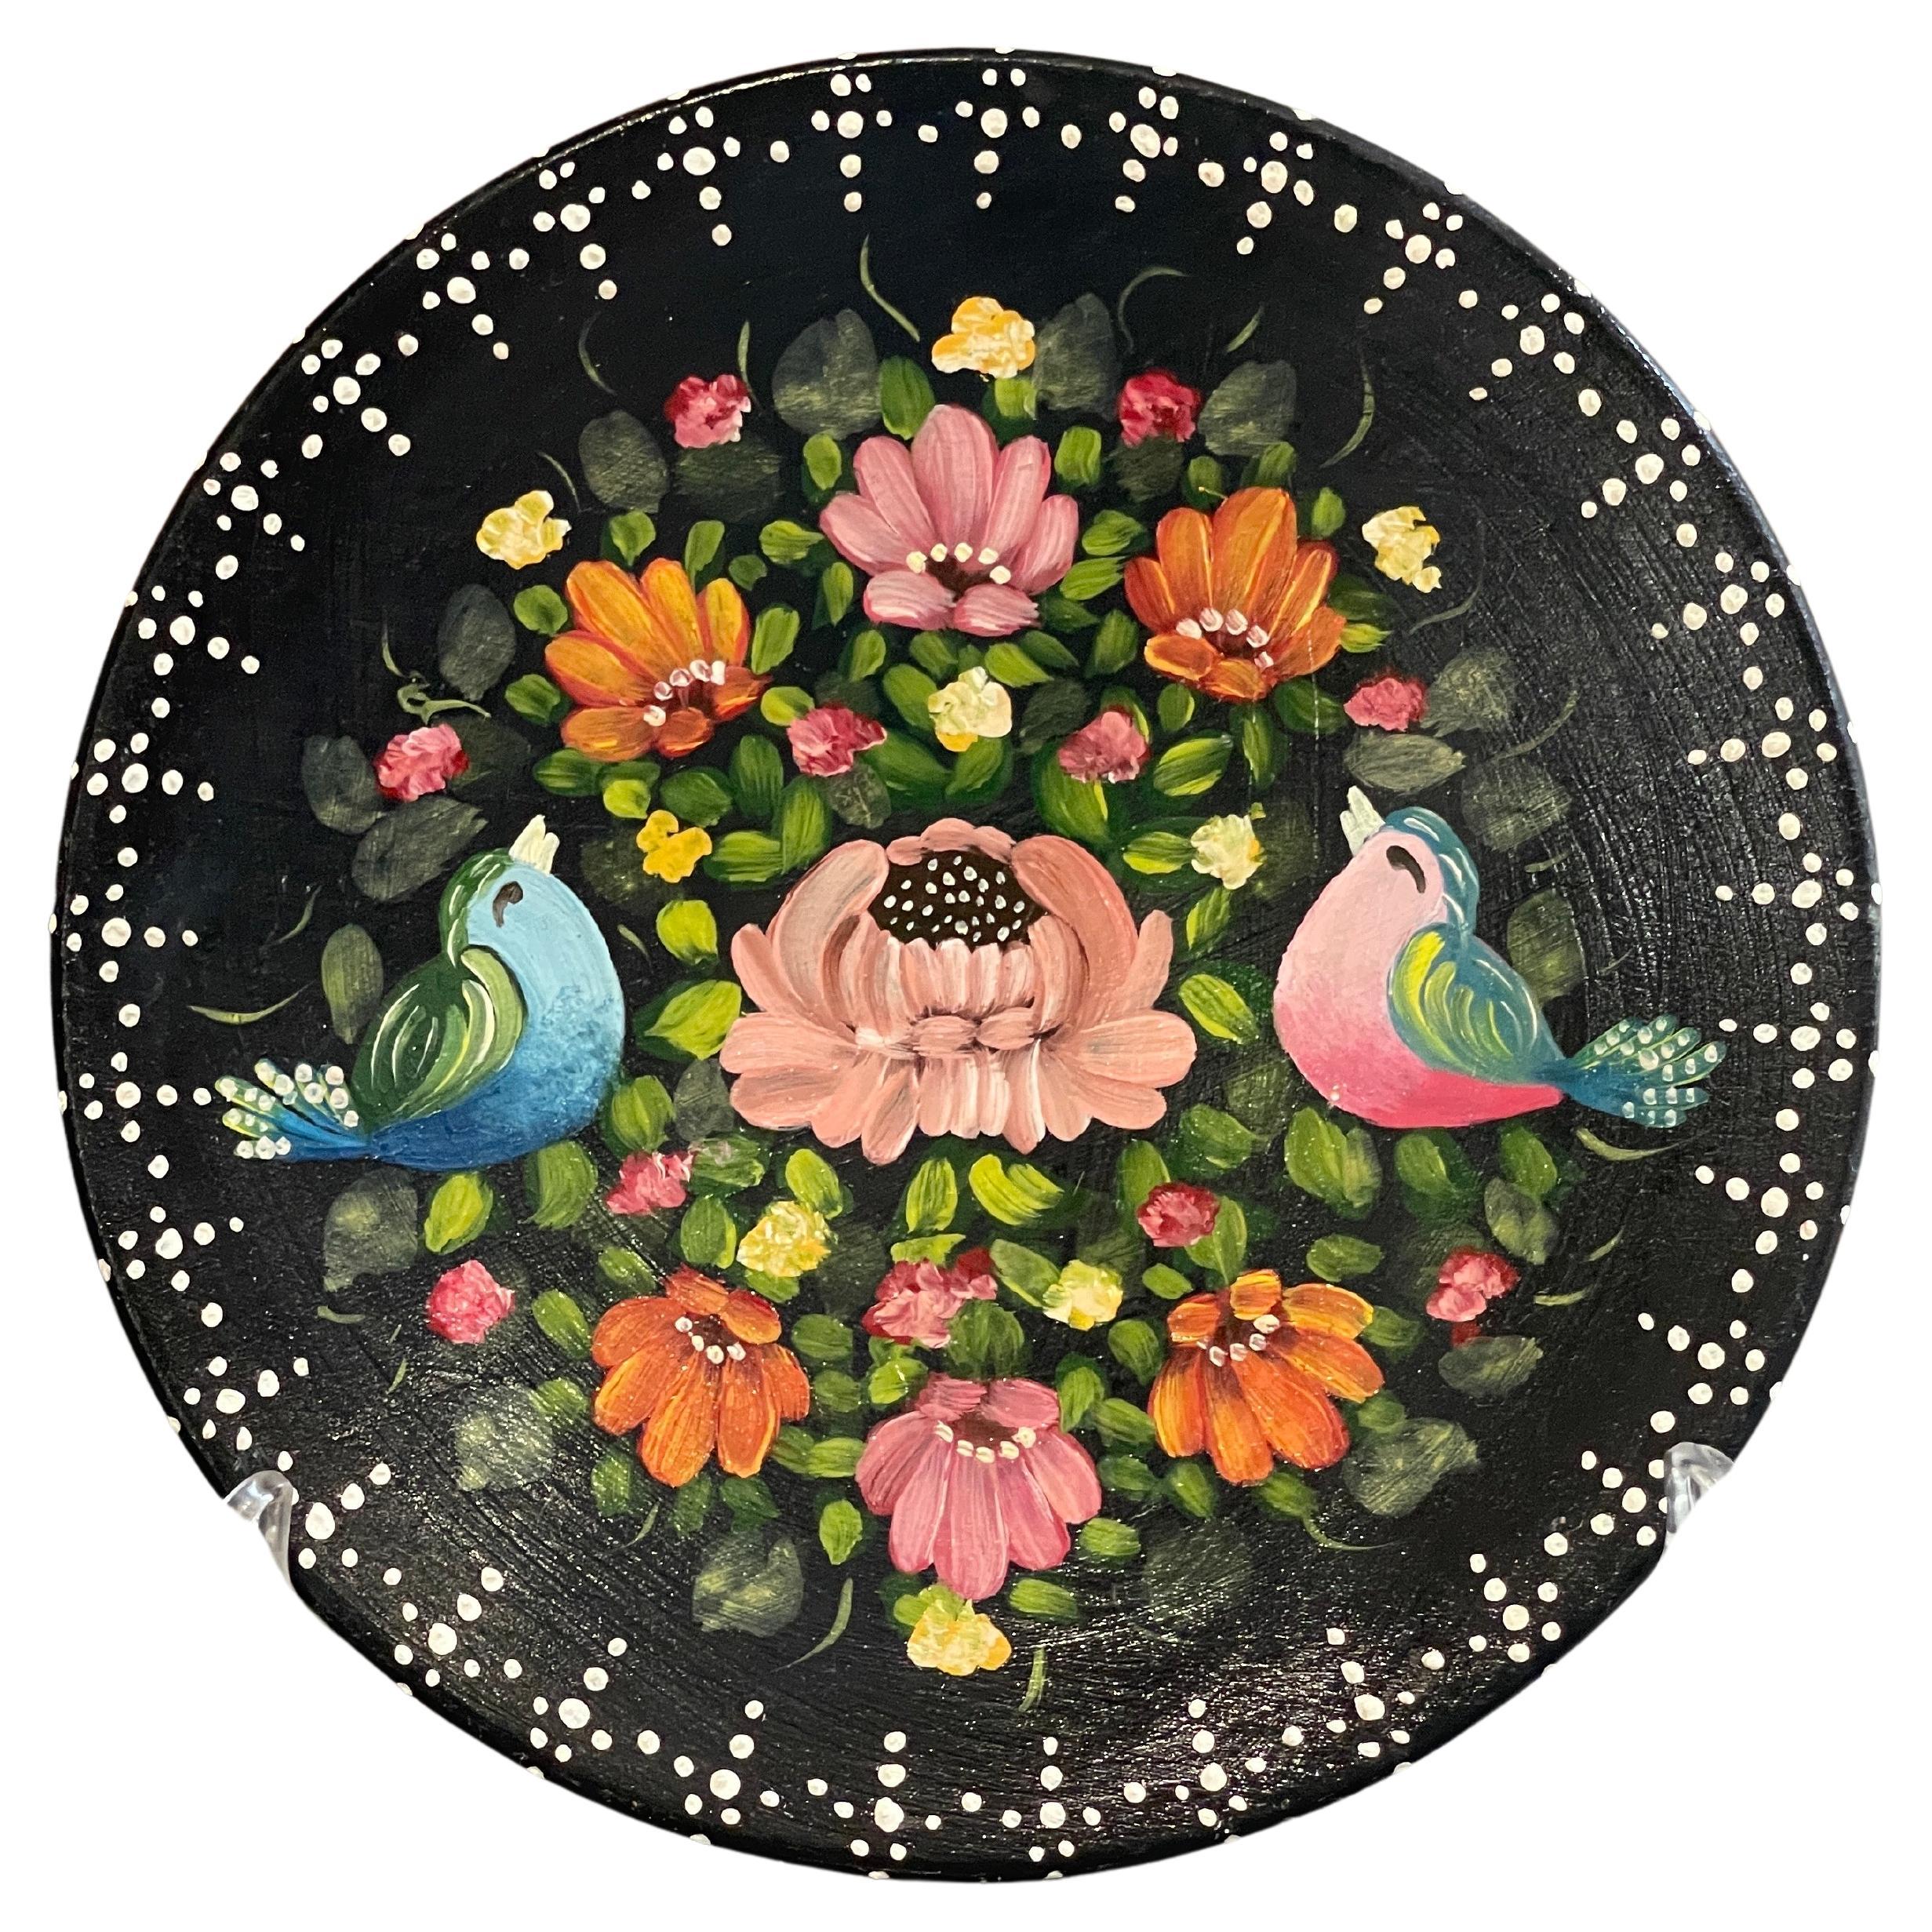 Handbemalte Vintage-Wanddekoration mit Vogel- und Blumenmotiv aus Keramik, dekorative Keramik